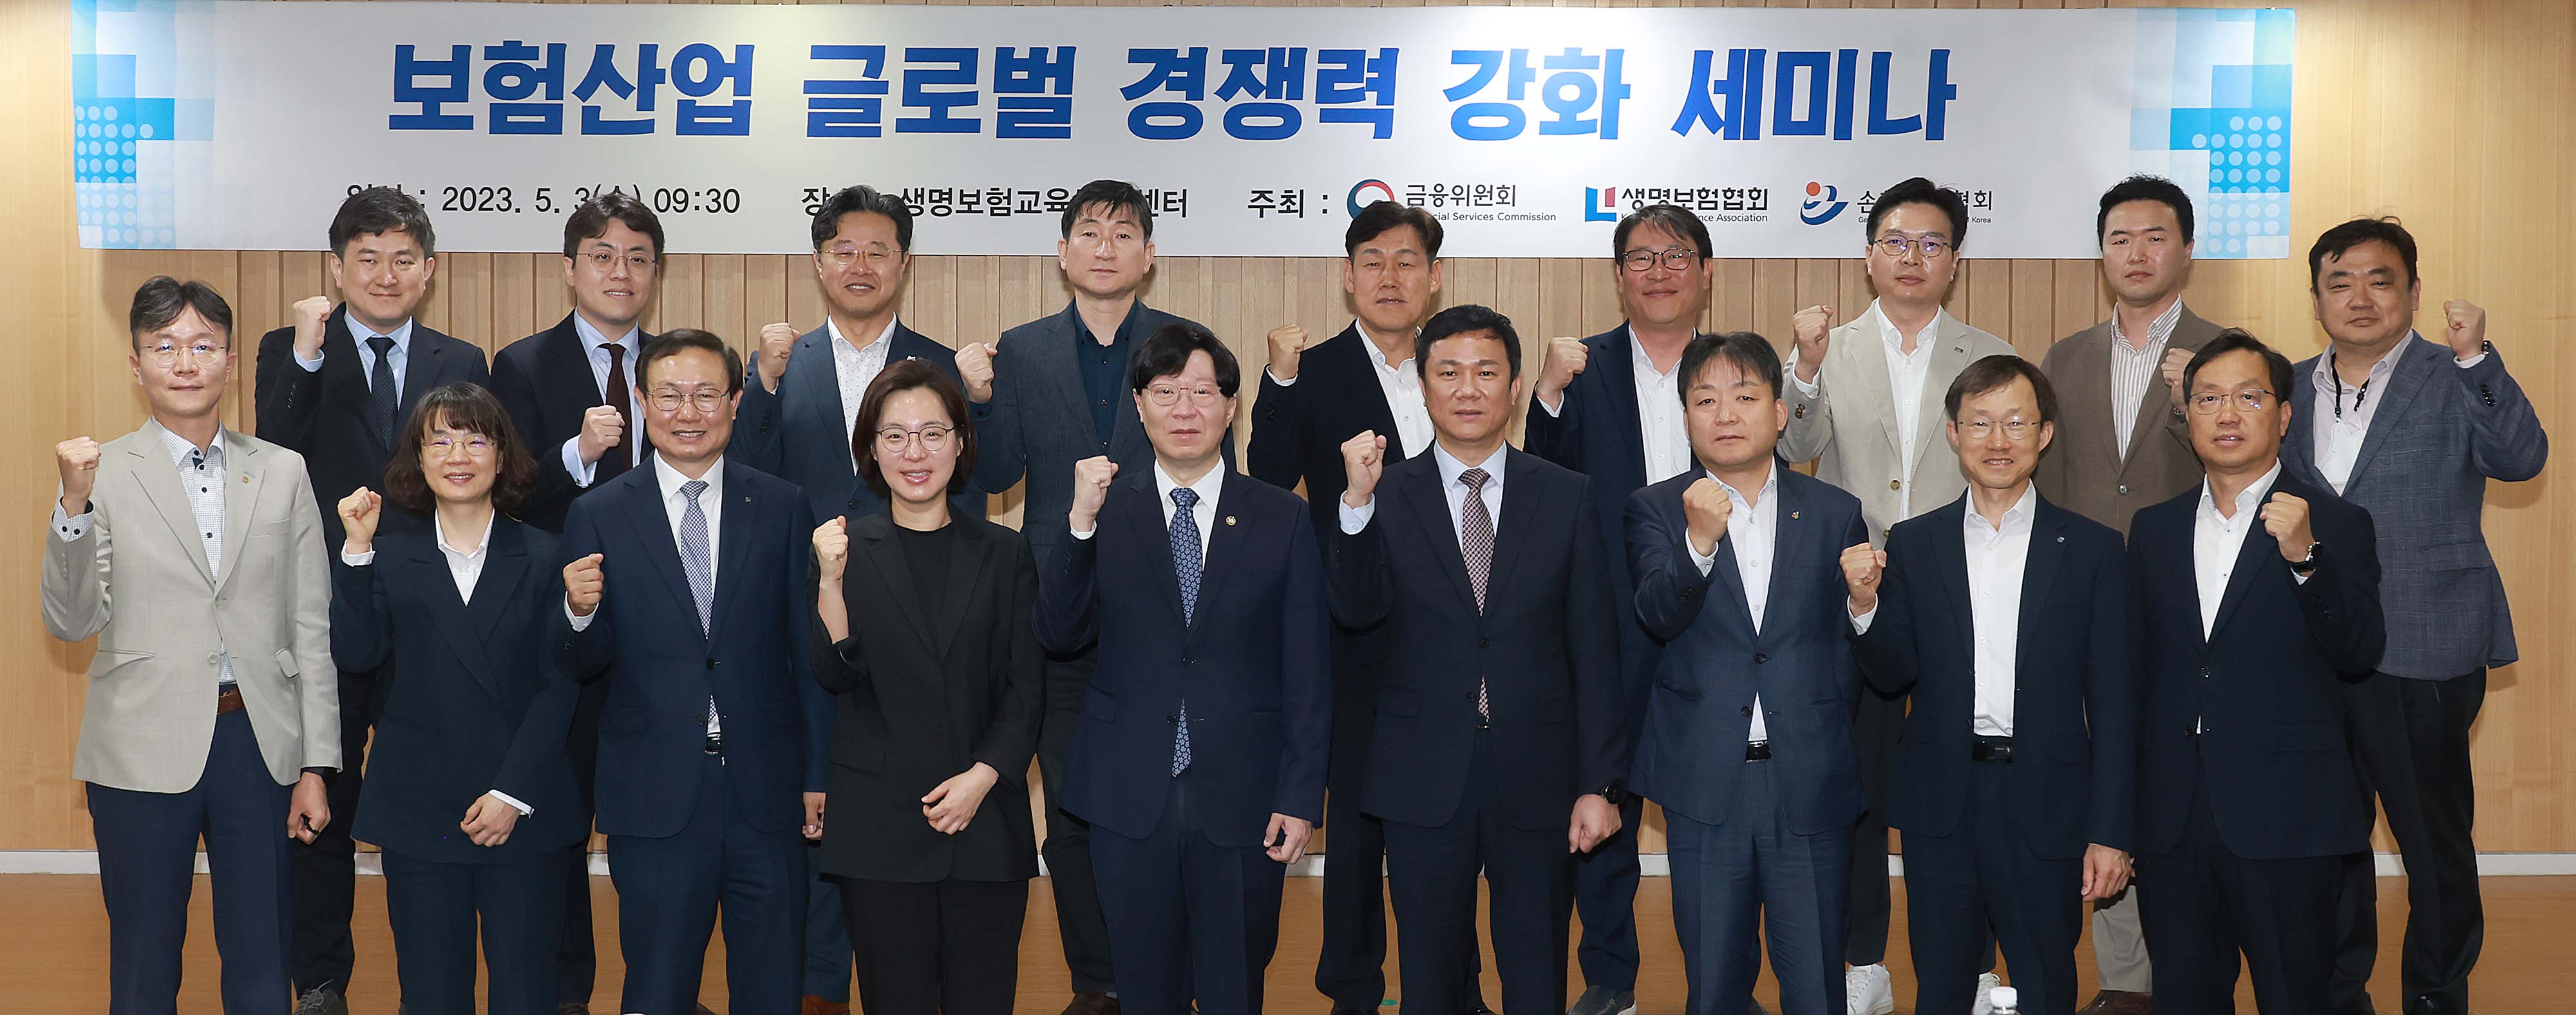 보험산업 글로벌 경쟁력 강화 세미나 개최3